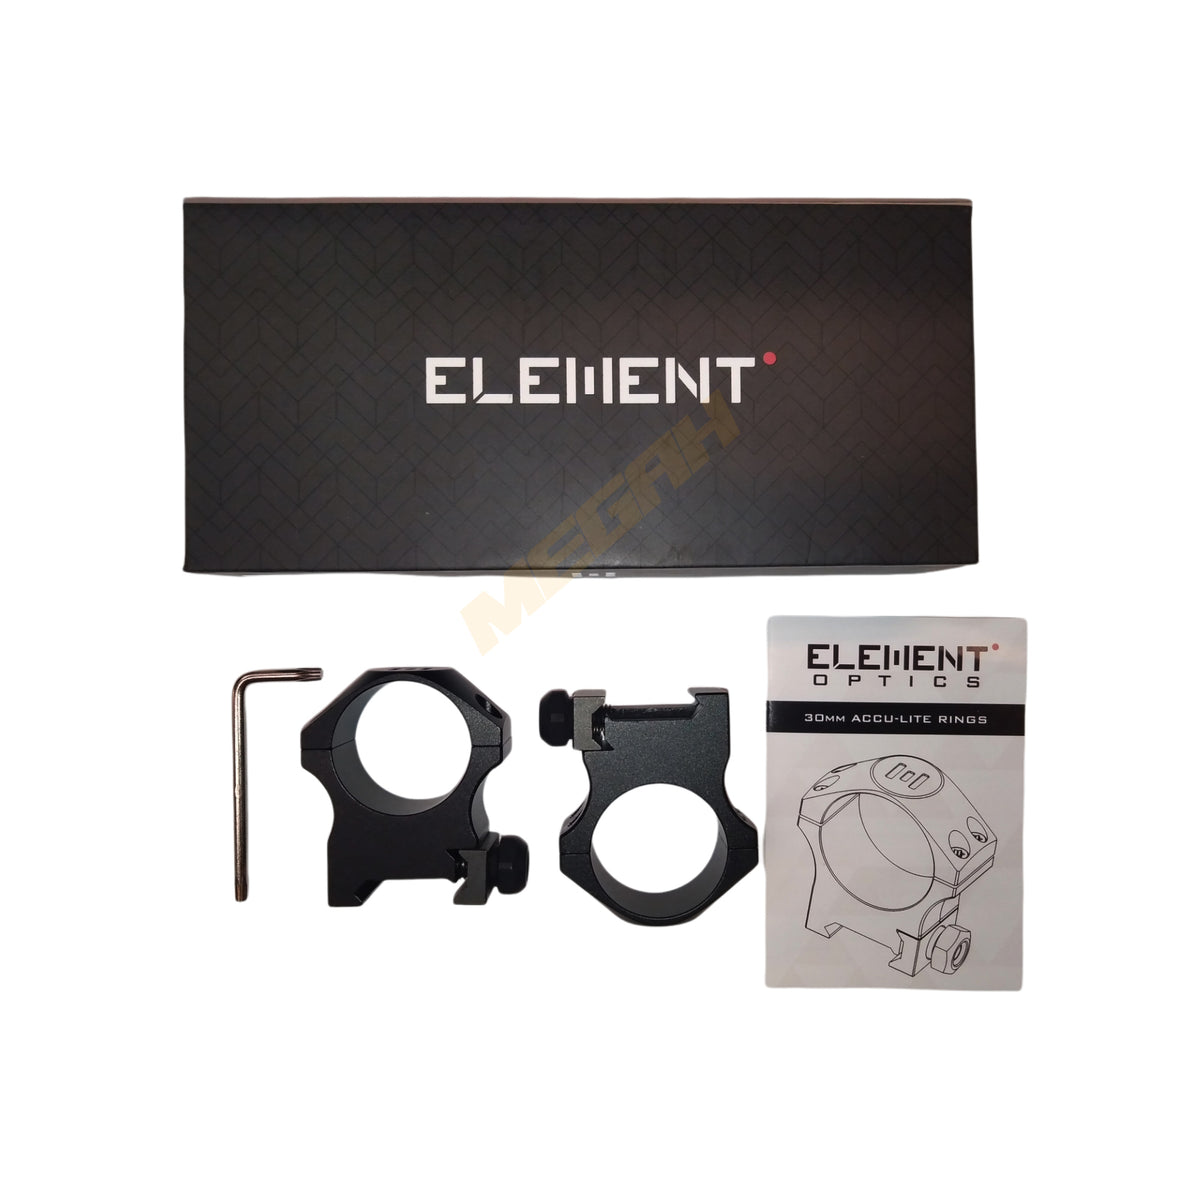 ELEMENT ACCU-LITE HIGH 30MM (MT725)